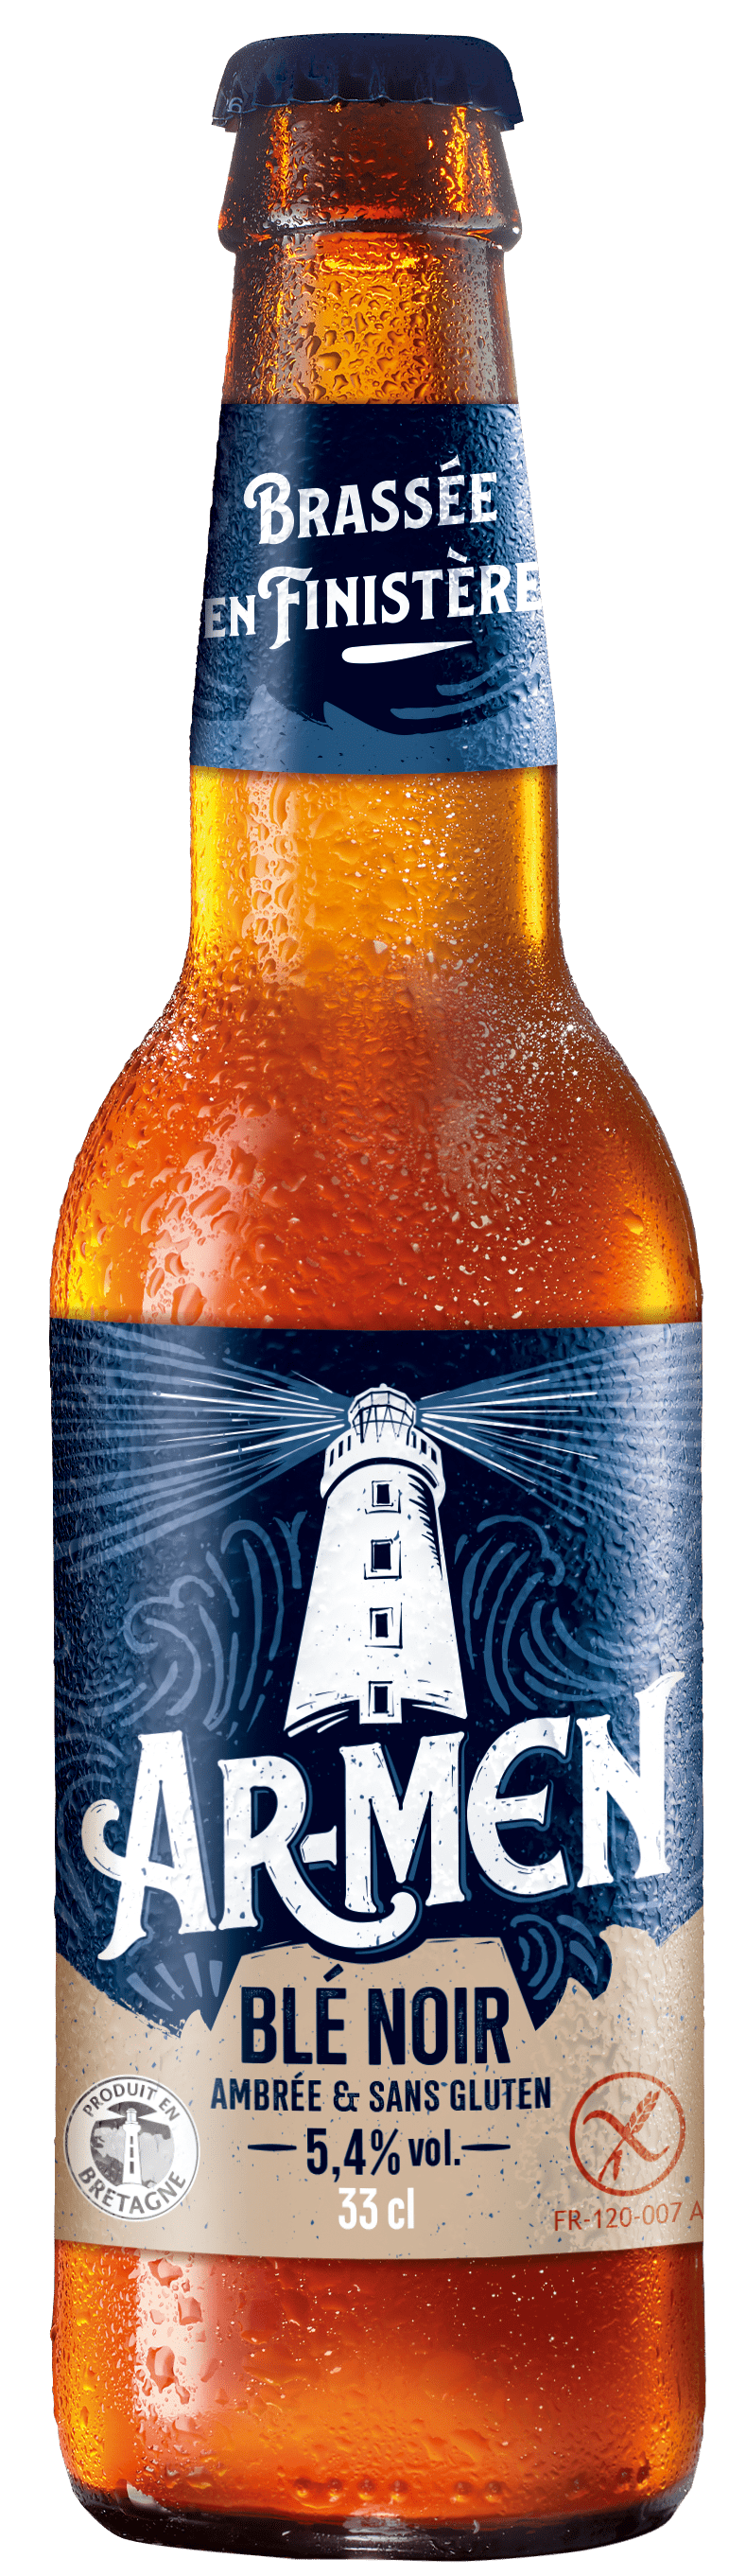 illustration bière